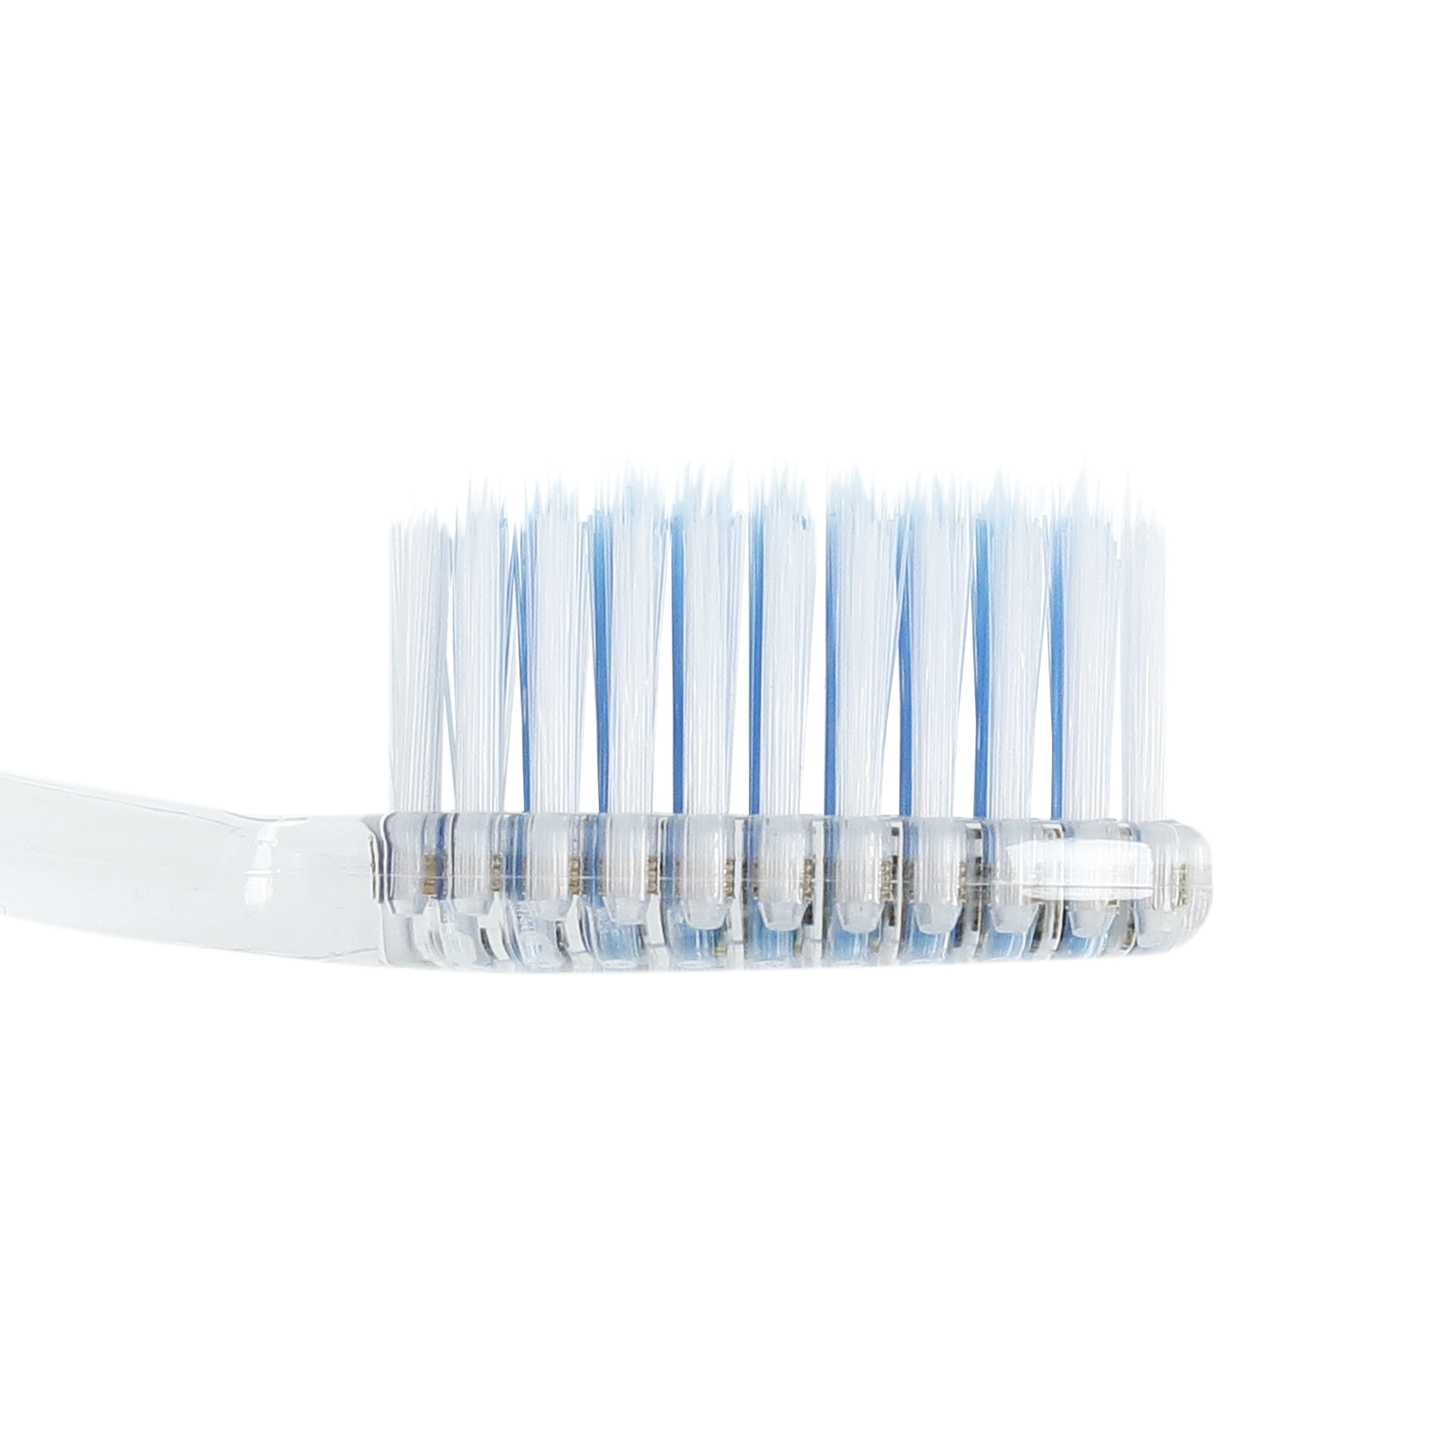 Alert Gentle Clean Toothbrush